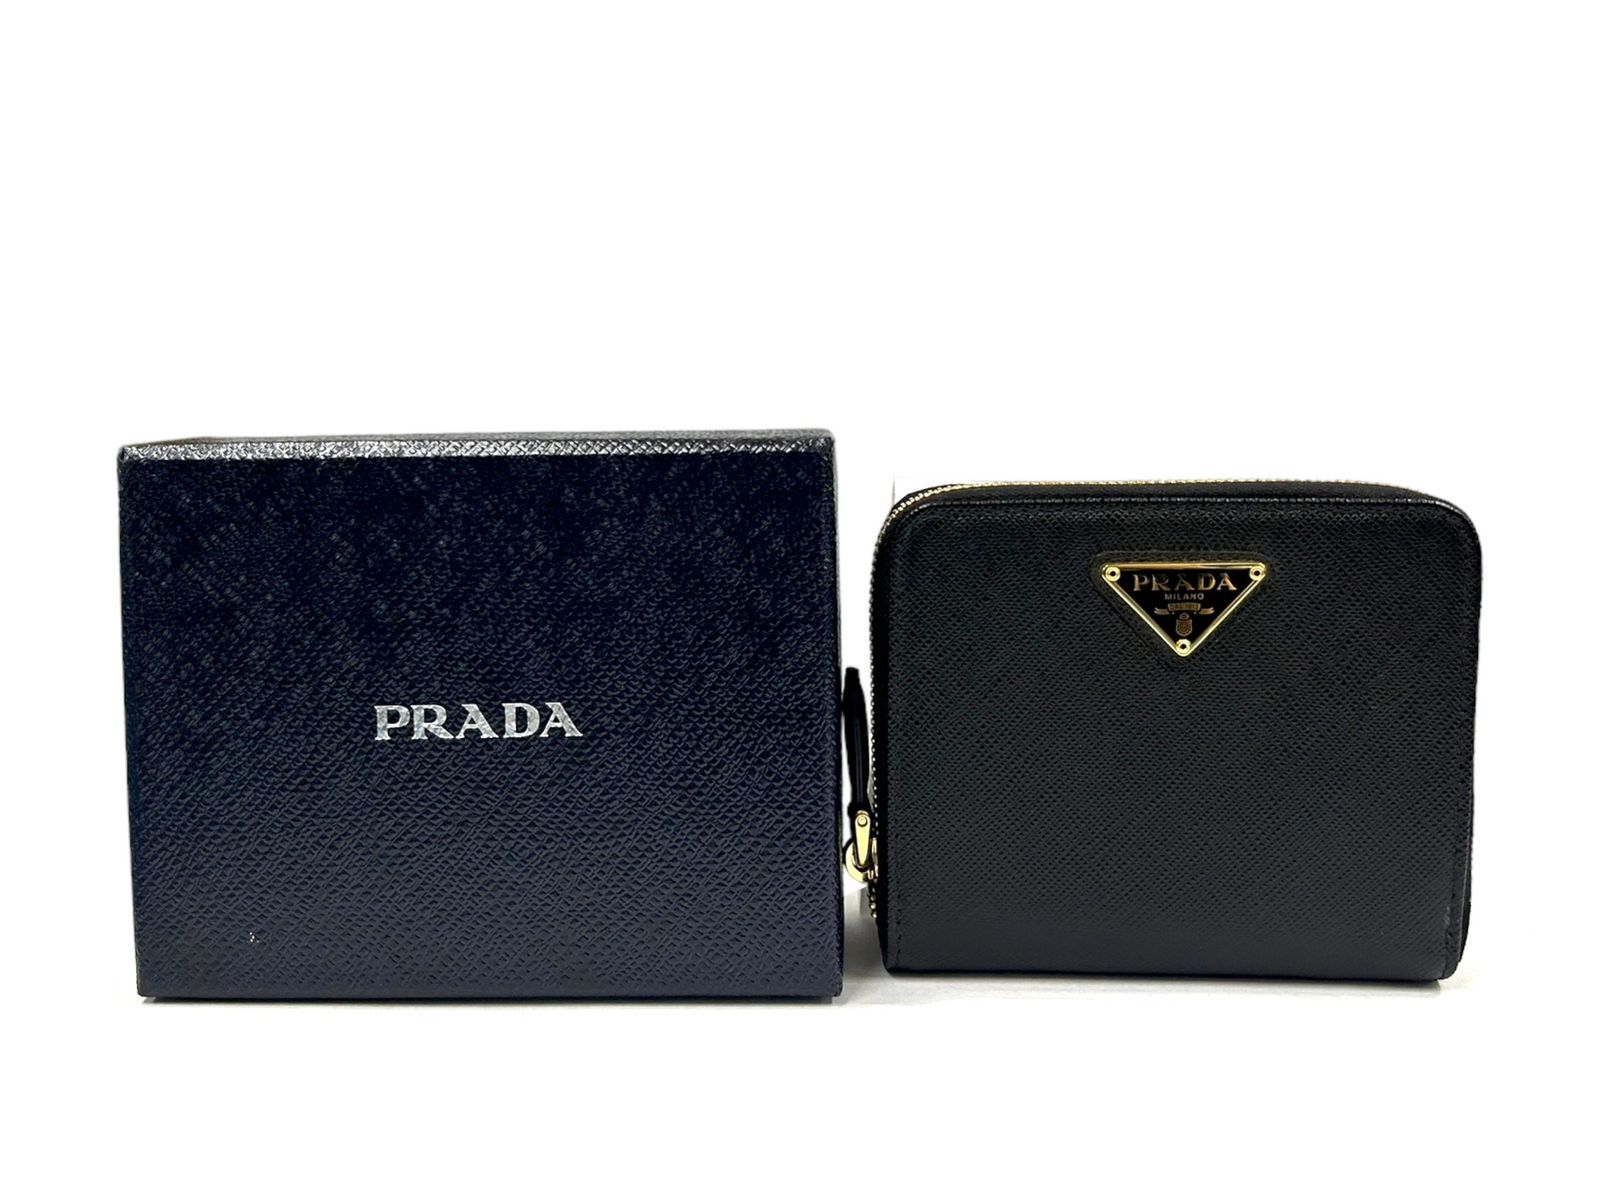 PRADA 二つ折り財布 コンパクト ウォレット サフィアーノ レザー ブラック